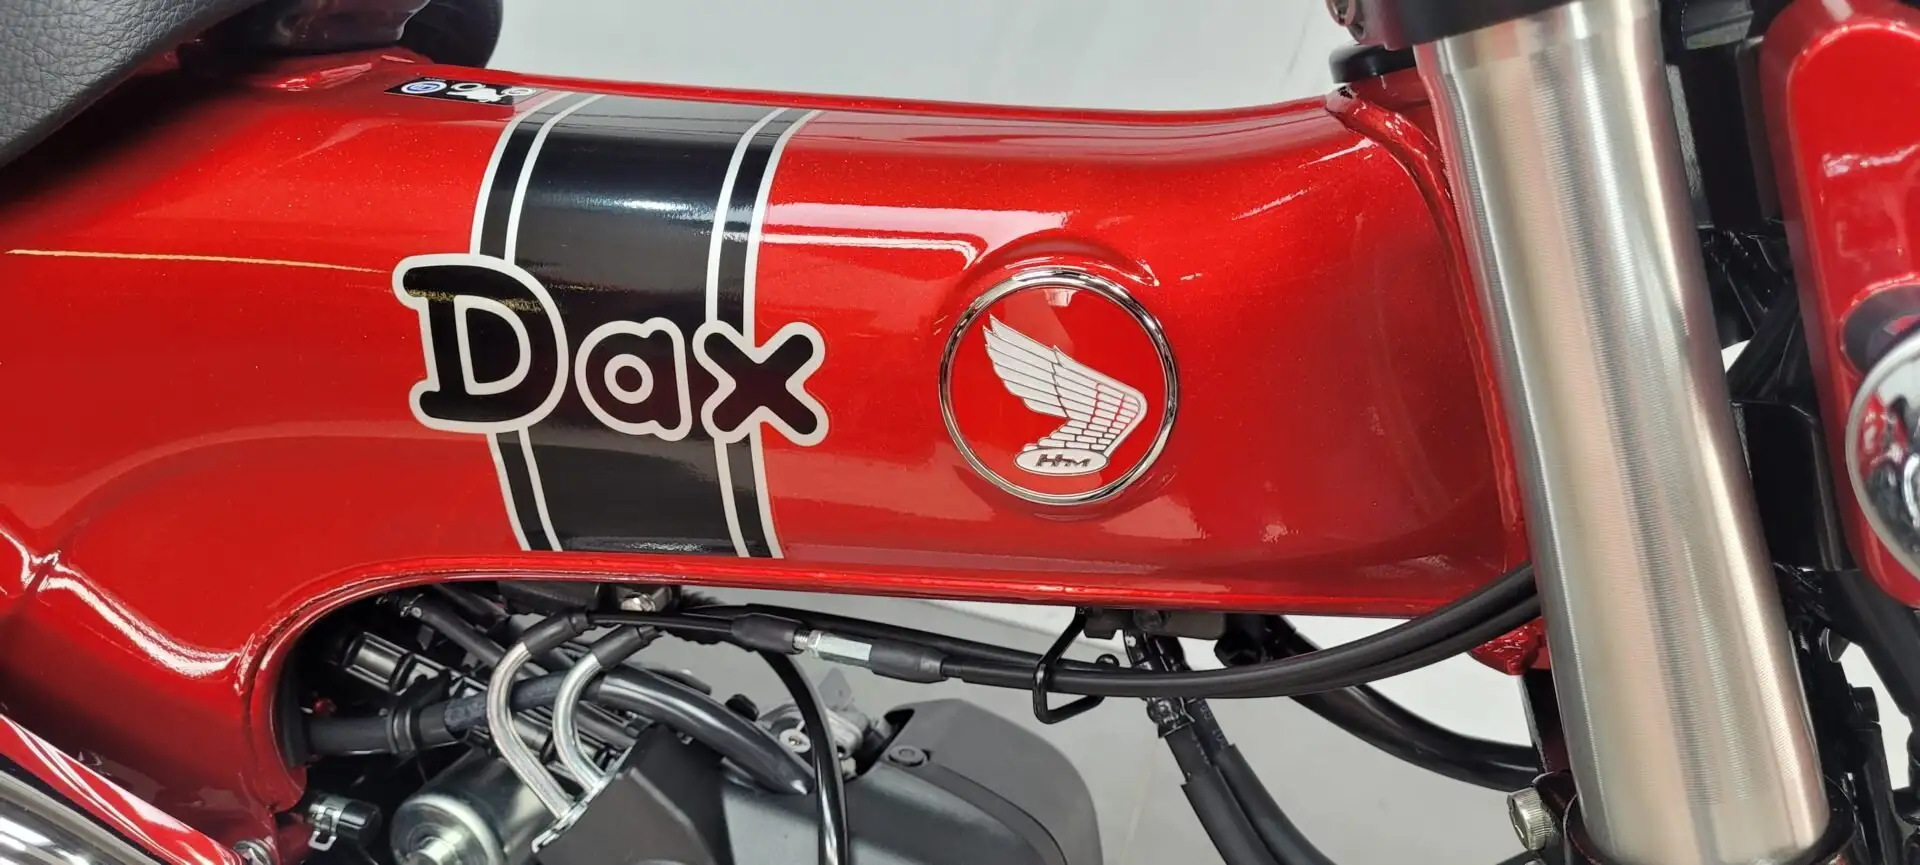 Honda DAX ST 125 9 km ... ***MOTODOC.BE*** Red - 2